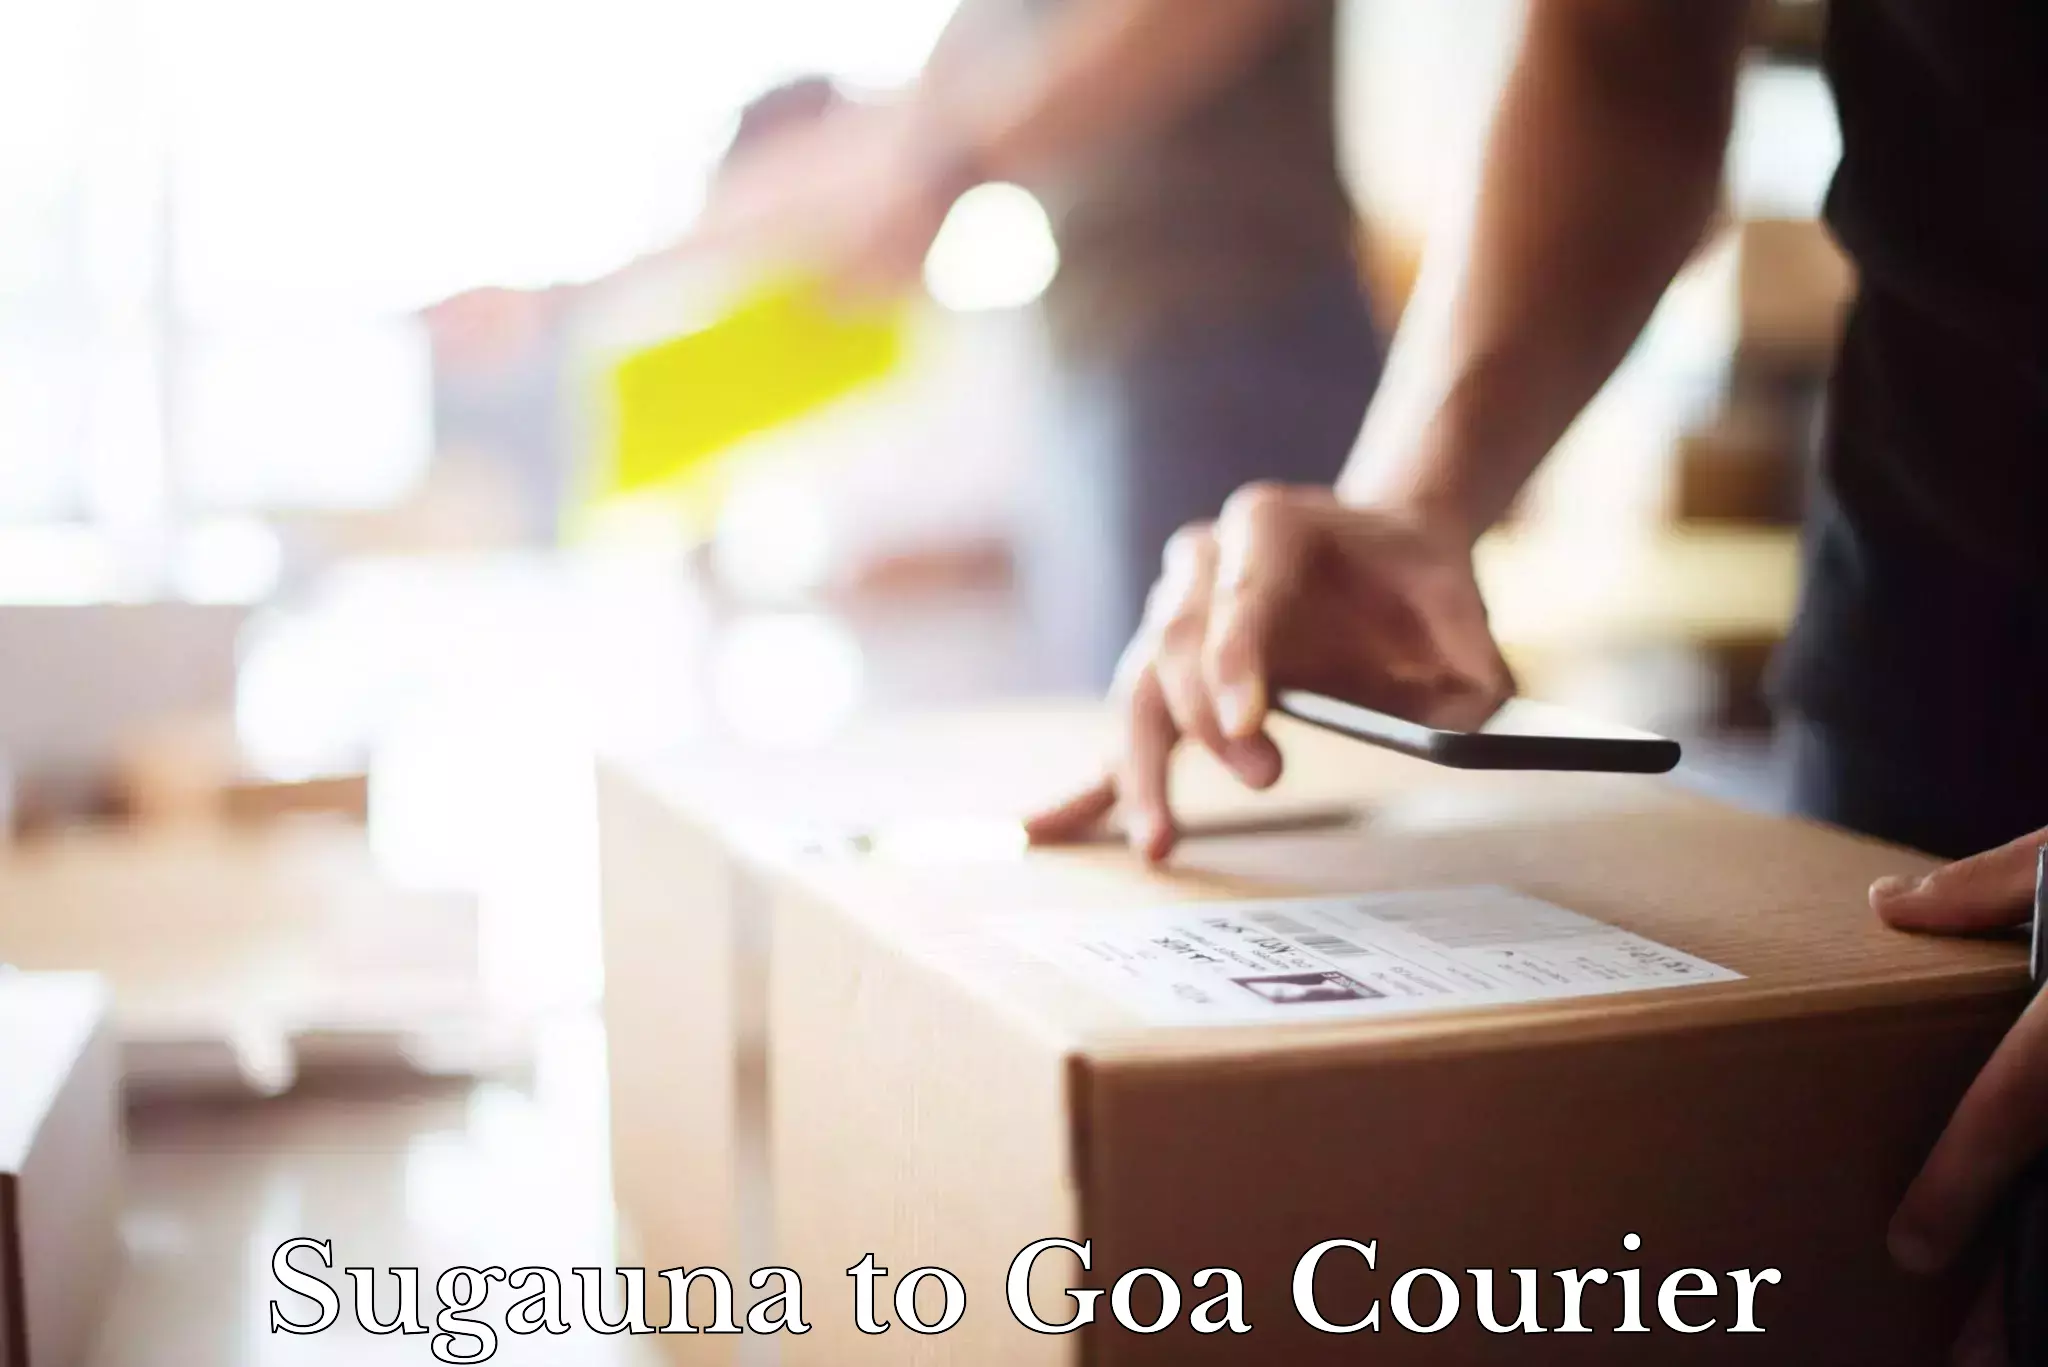 Local delivery service Sugauna to Goa University